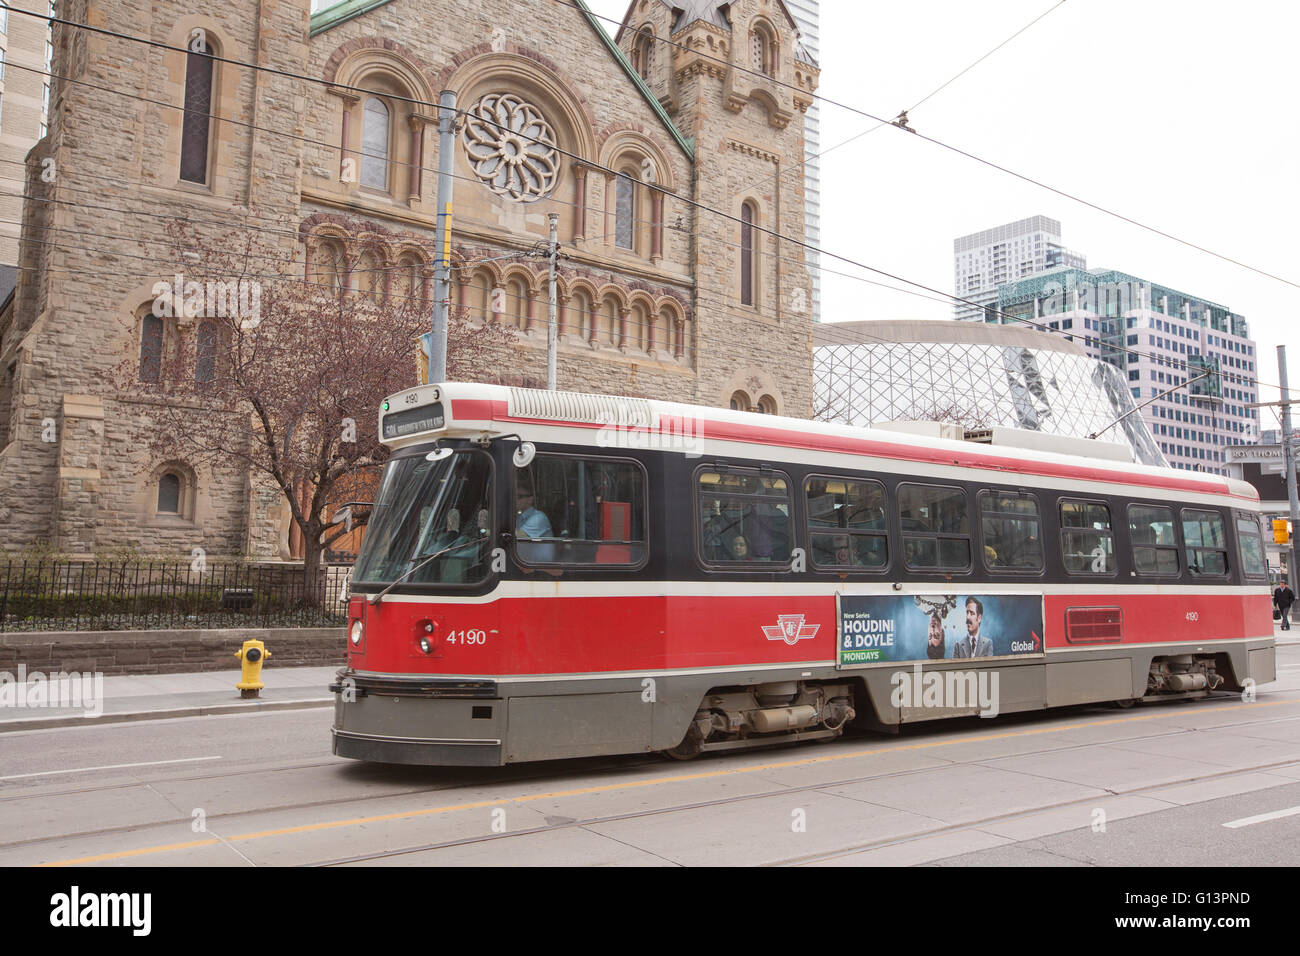 TORONTO - Le 28 avril 2016:La Toronto Transit Commission est une agence de transport public qui exploite des autobus urbains, tramway, parat Banque D'Images